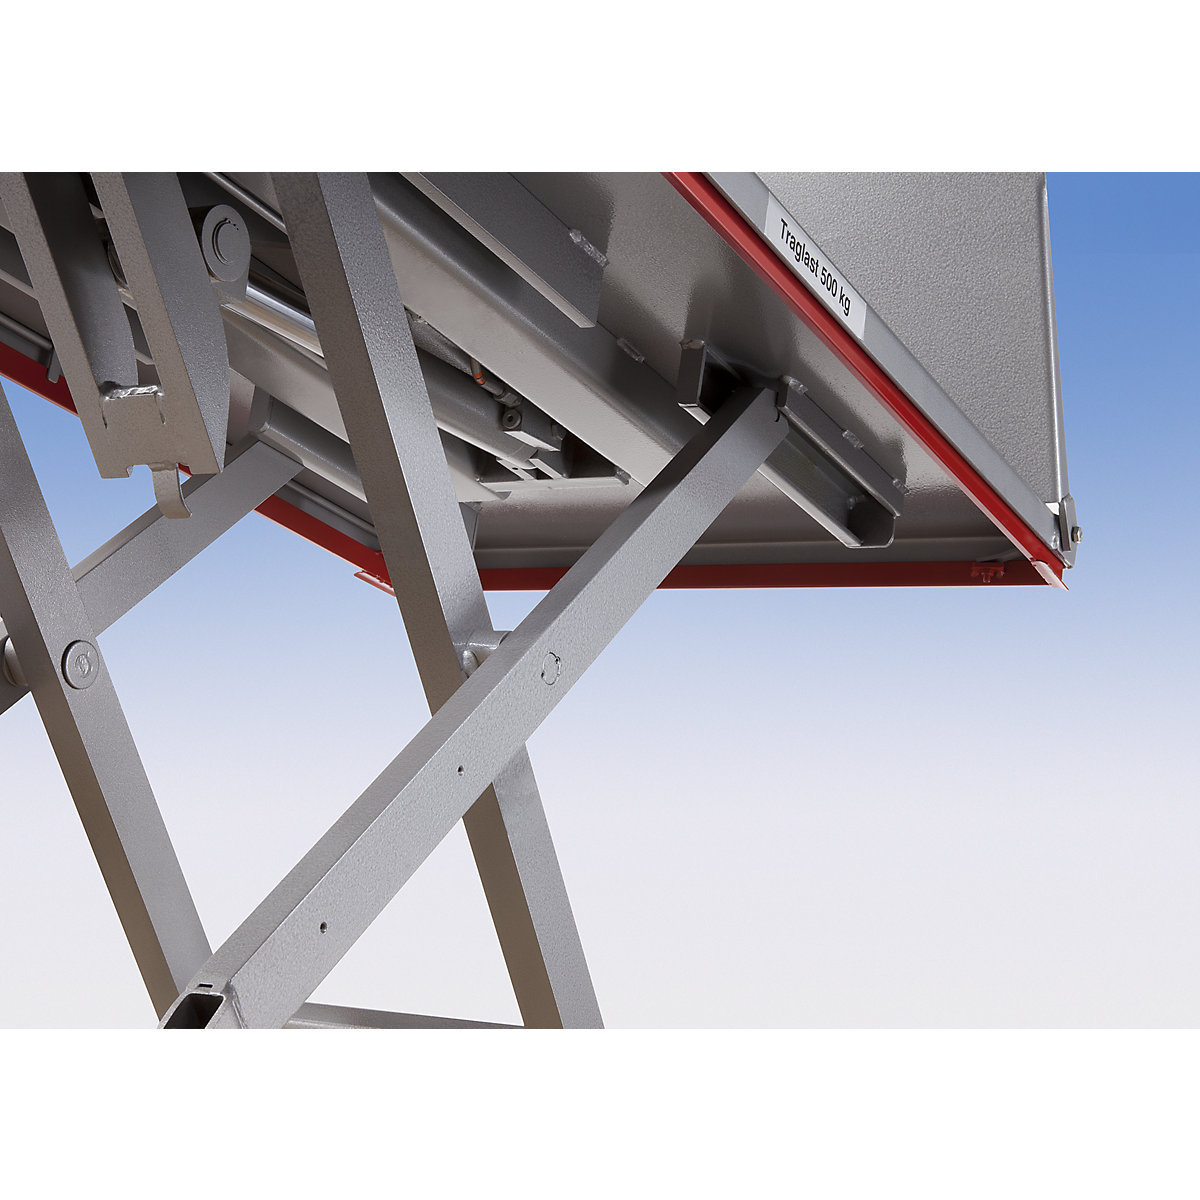 Mesa elevadora plana – Flexlift (Imagen del producto 9)-8